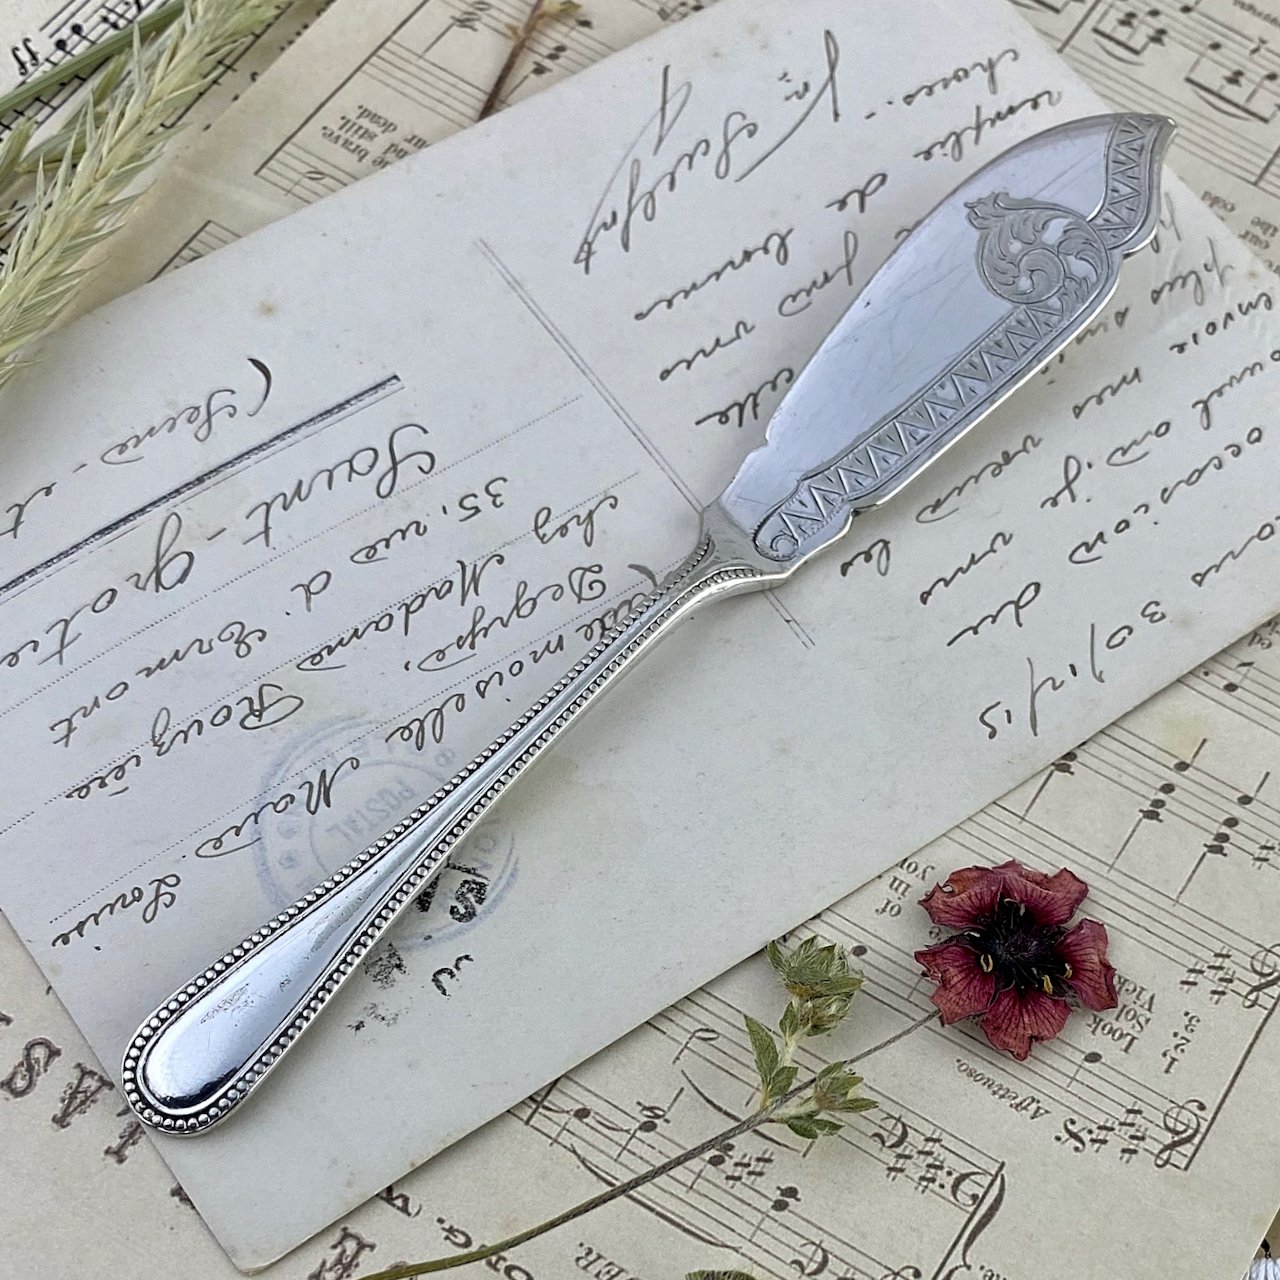 Антикварный английский нож для масла Walker & Hall с серебряным покрытием